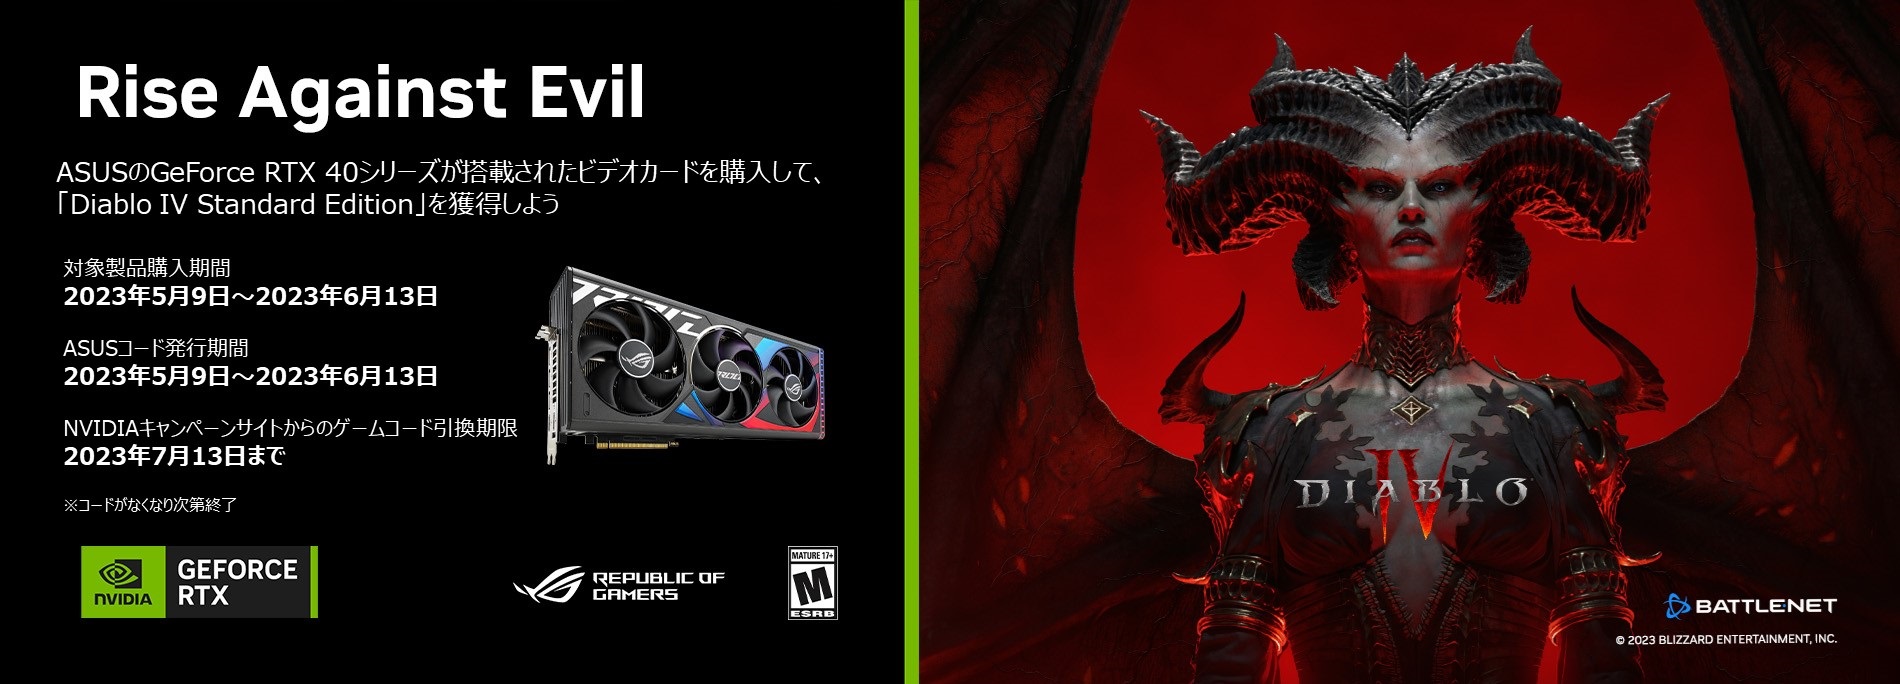 ASUSのGeForce RTX 40シリーズが搭載されたビデオカードを購入して、「Diablo IV Standard Edition」を獲得しよう